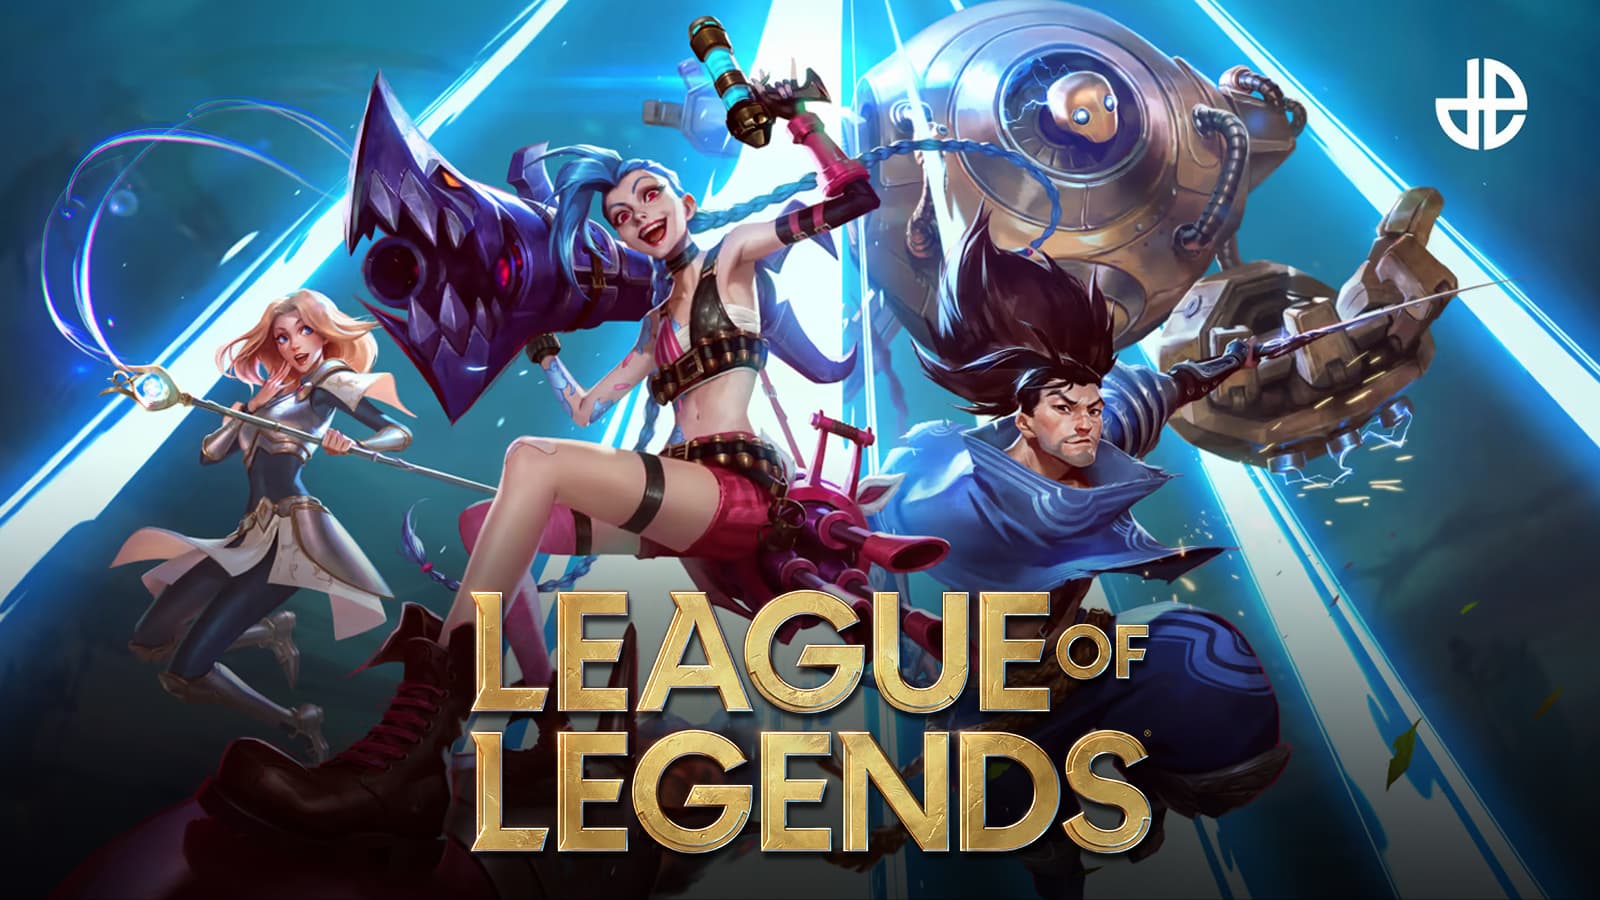 League of Legends: veja as novidades da atualização do game em